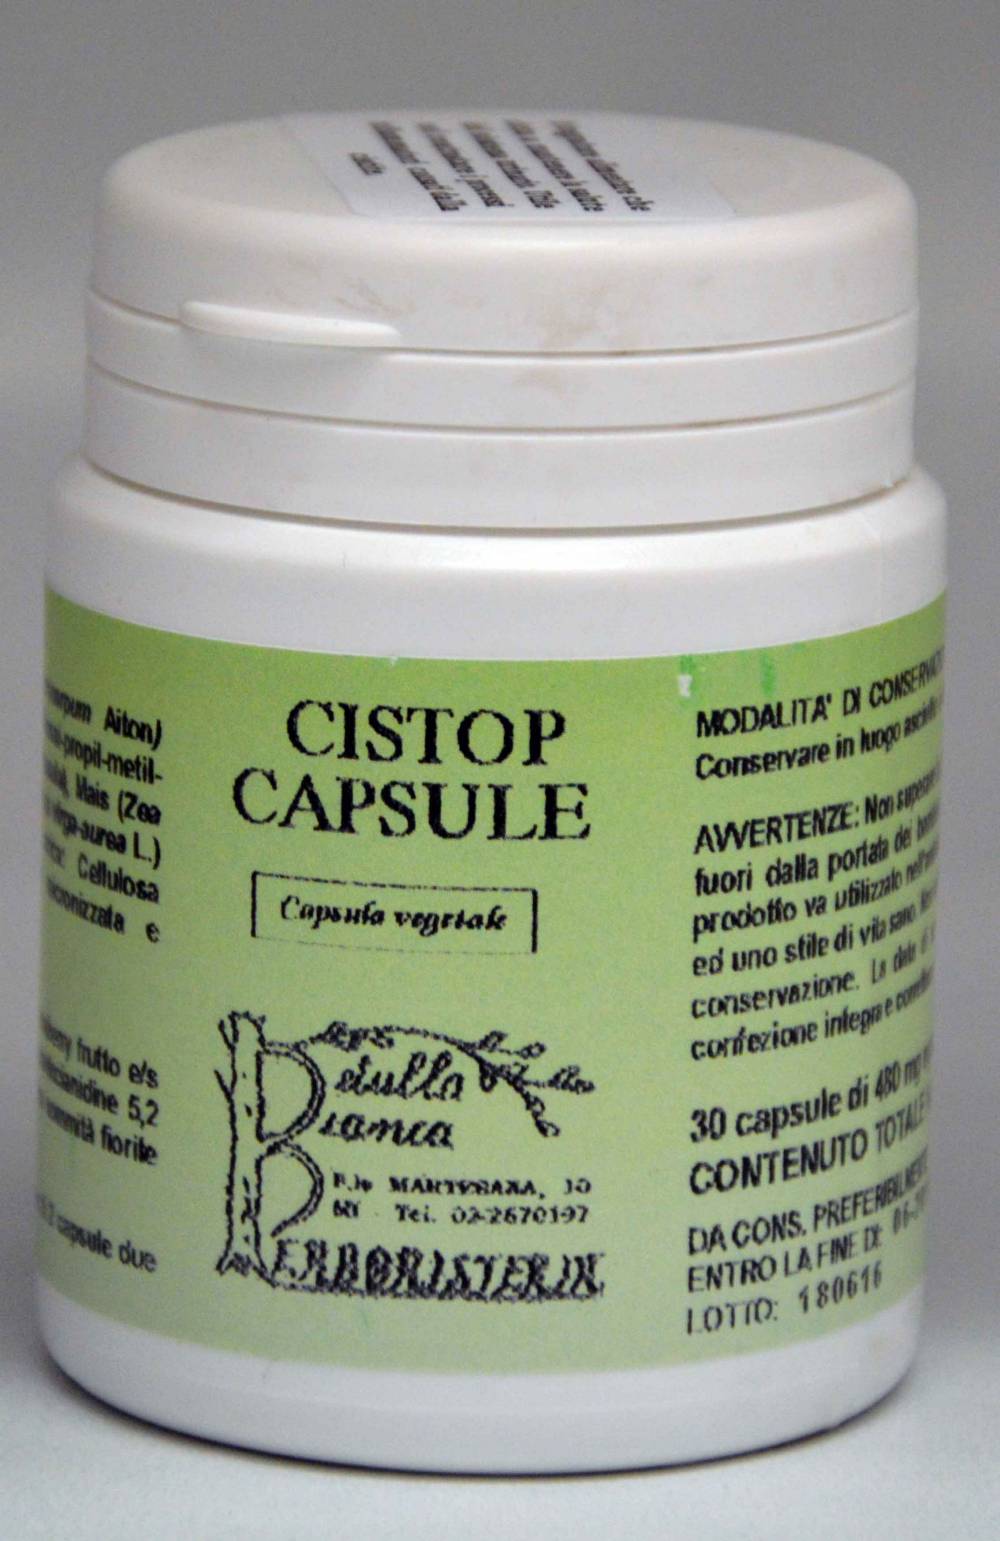 Cistop capsule